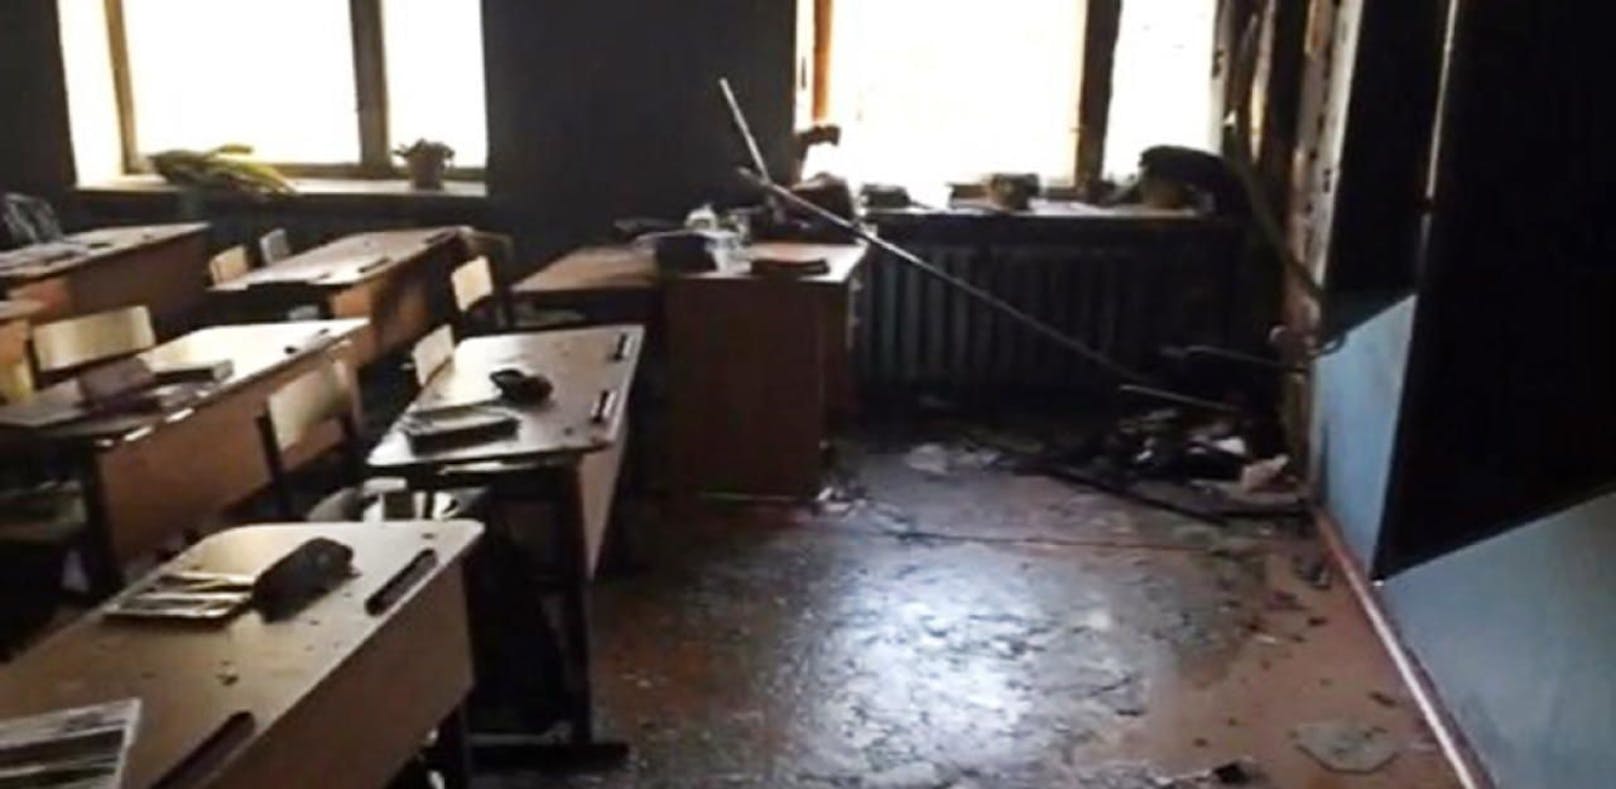 Das Klassenzimmer nach dem Angriff